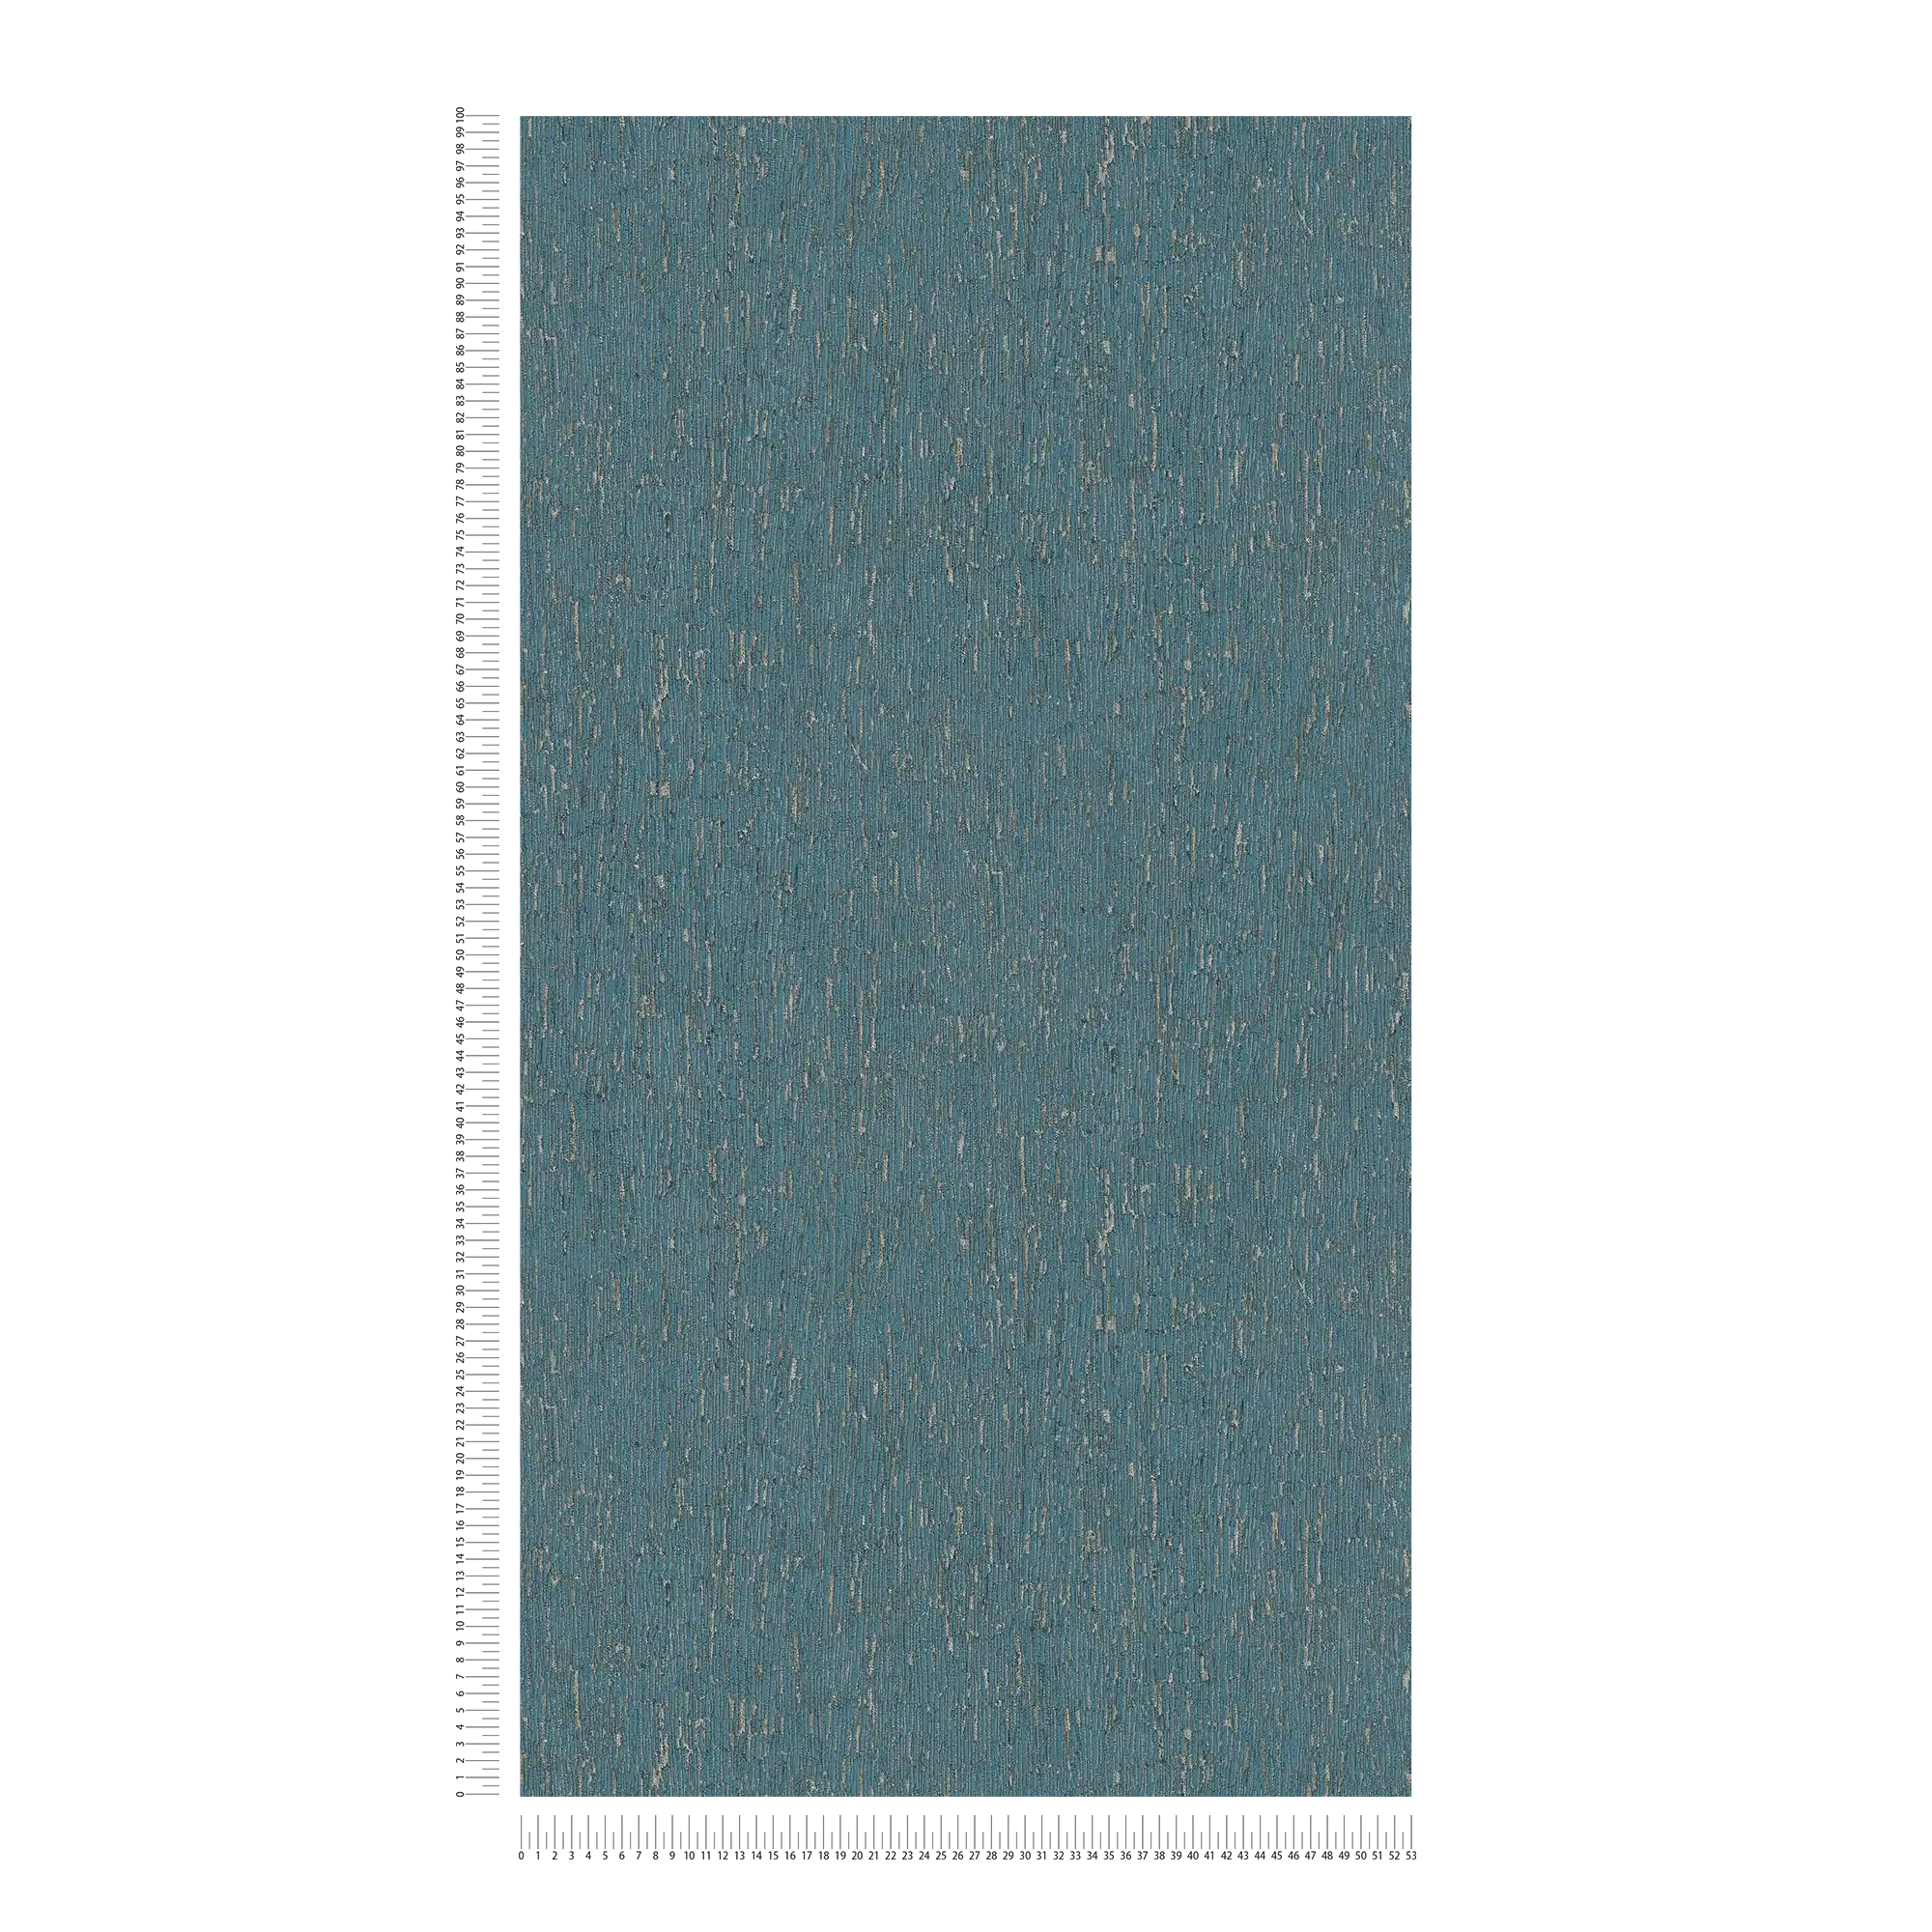             Carta da parati non tessuta effetto gesso con accenti dorati - blu, petrolio, argento
        